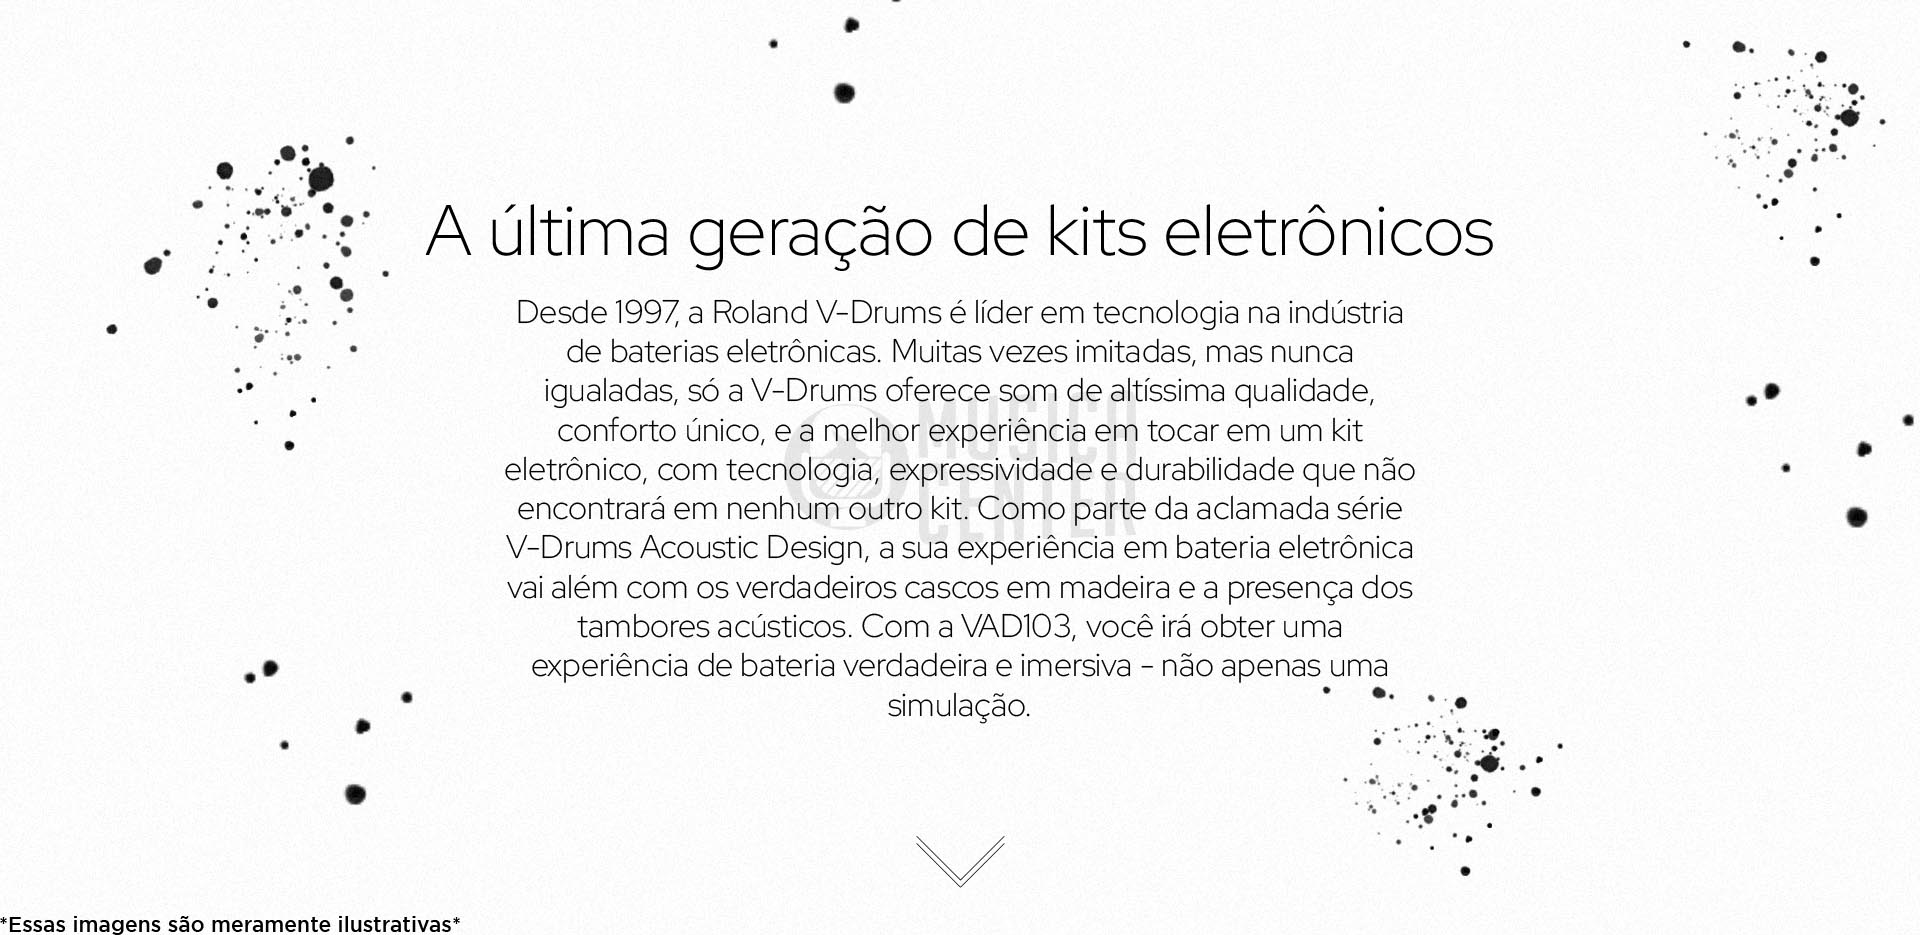 Bateria Eletrônica Roland VAD-103 Acoustic Design, a ultima geração de kits eletrônicos.